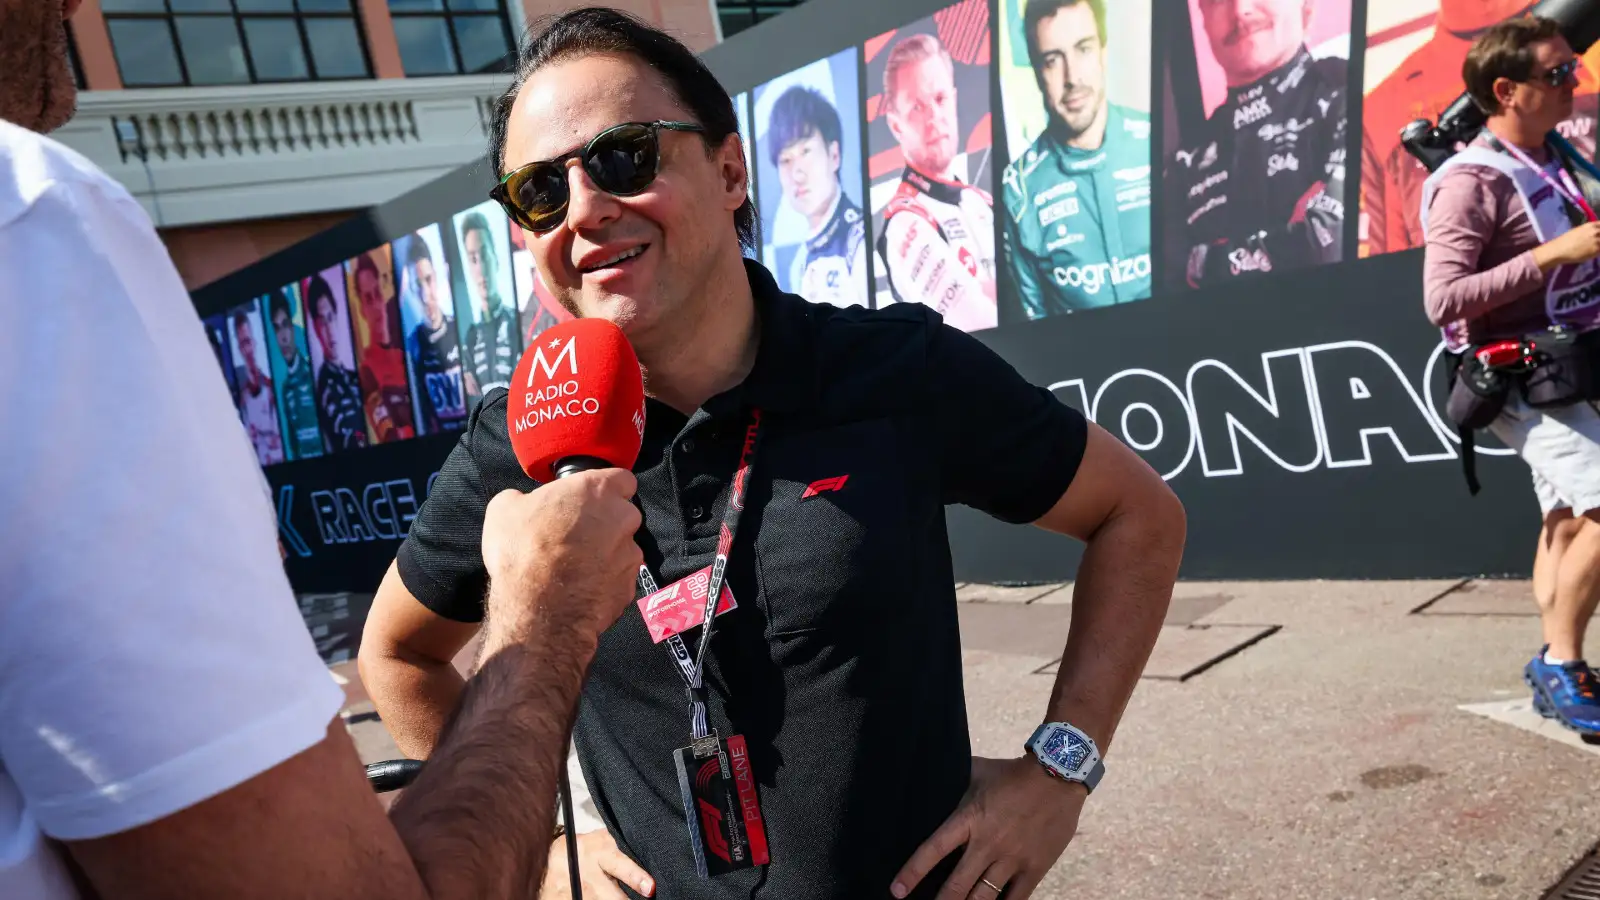 Former F1 driver Felipe Massa in attendance at the Monaco Grand Prix. F1 news